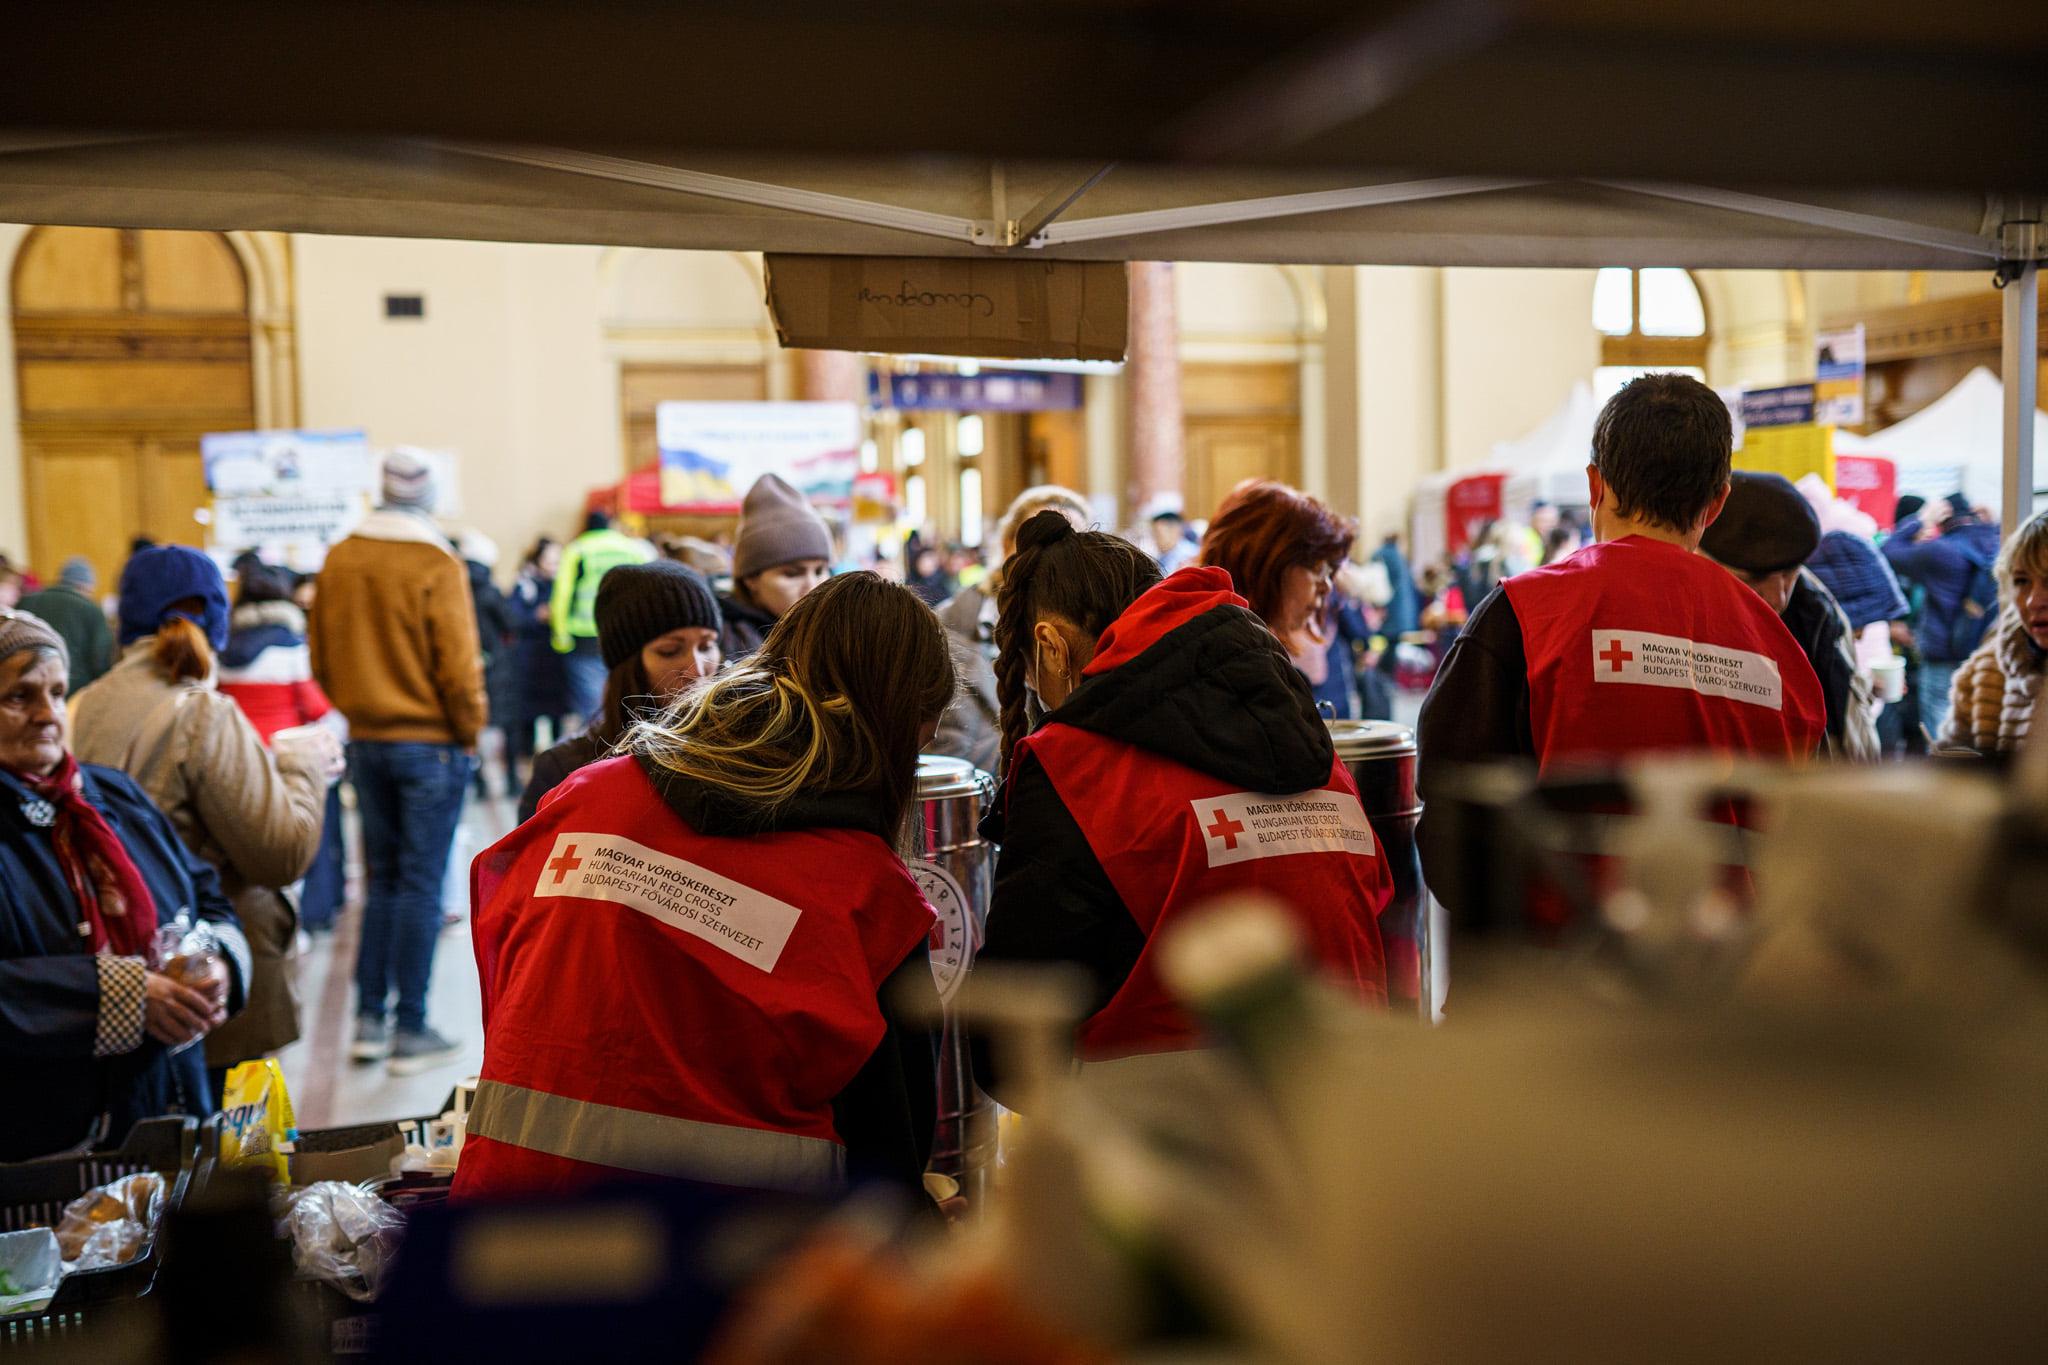 La photo montre trois personnes jeunes de dos. Elles portent des gilets rouges arborant l’emblème de la Croix-Rouge. Elles se trouvent sous une tente à l’intérieur d’un hall de gare où se pressent un grand nombre de personnes. Elles distribuent des boissons et des colis alimentaires.